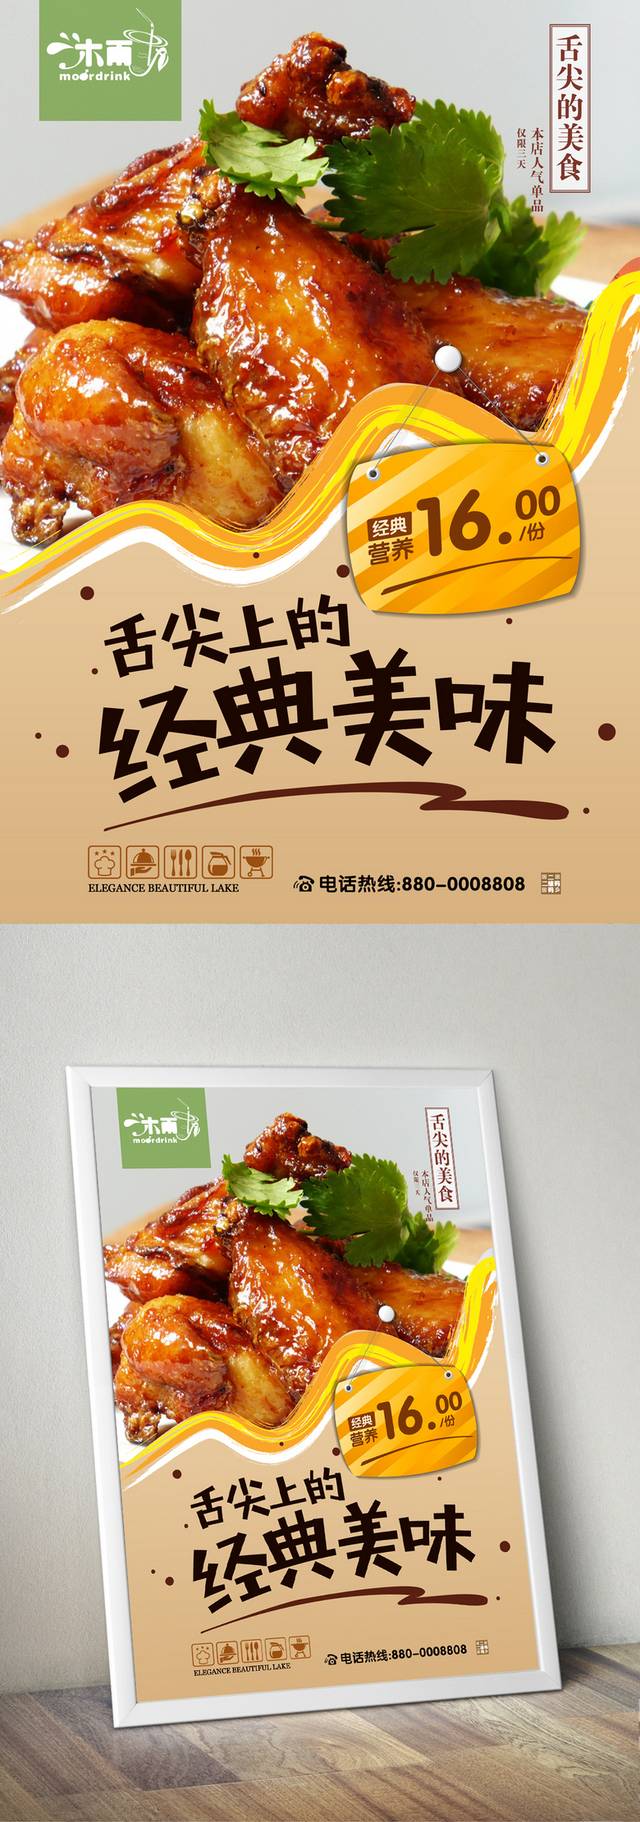 餐饮文化宣传海报设计下载